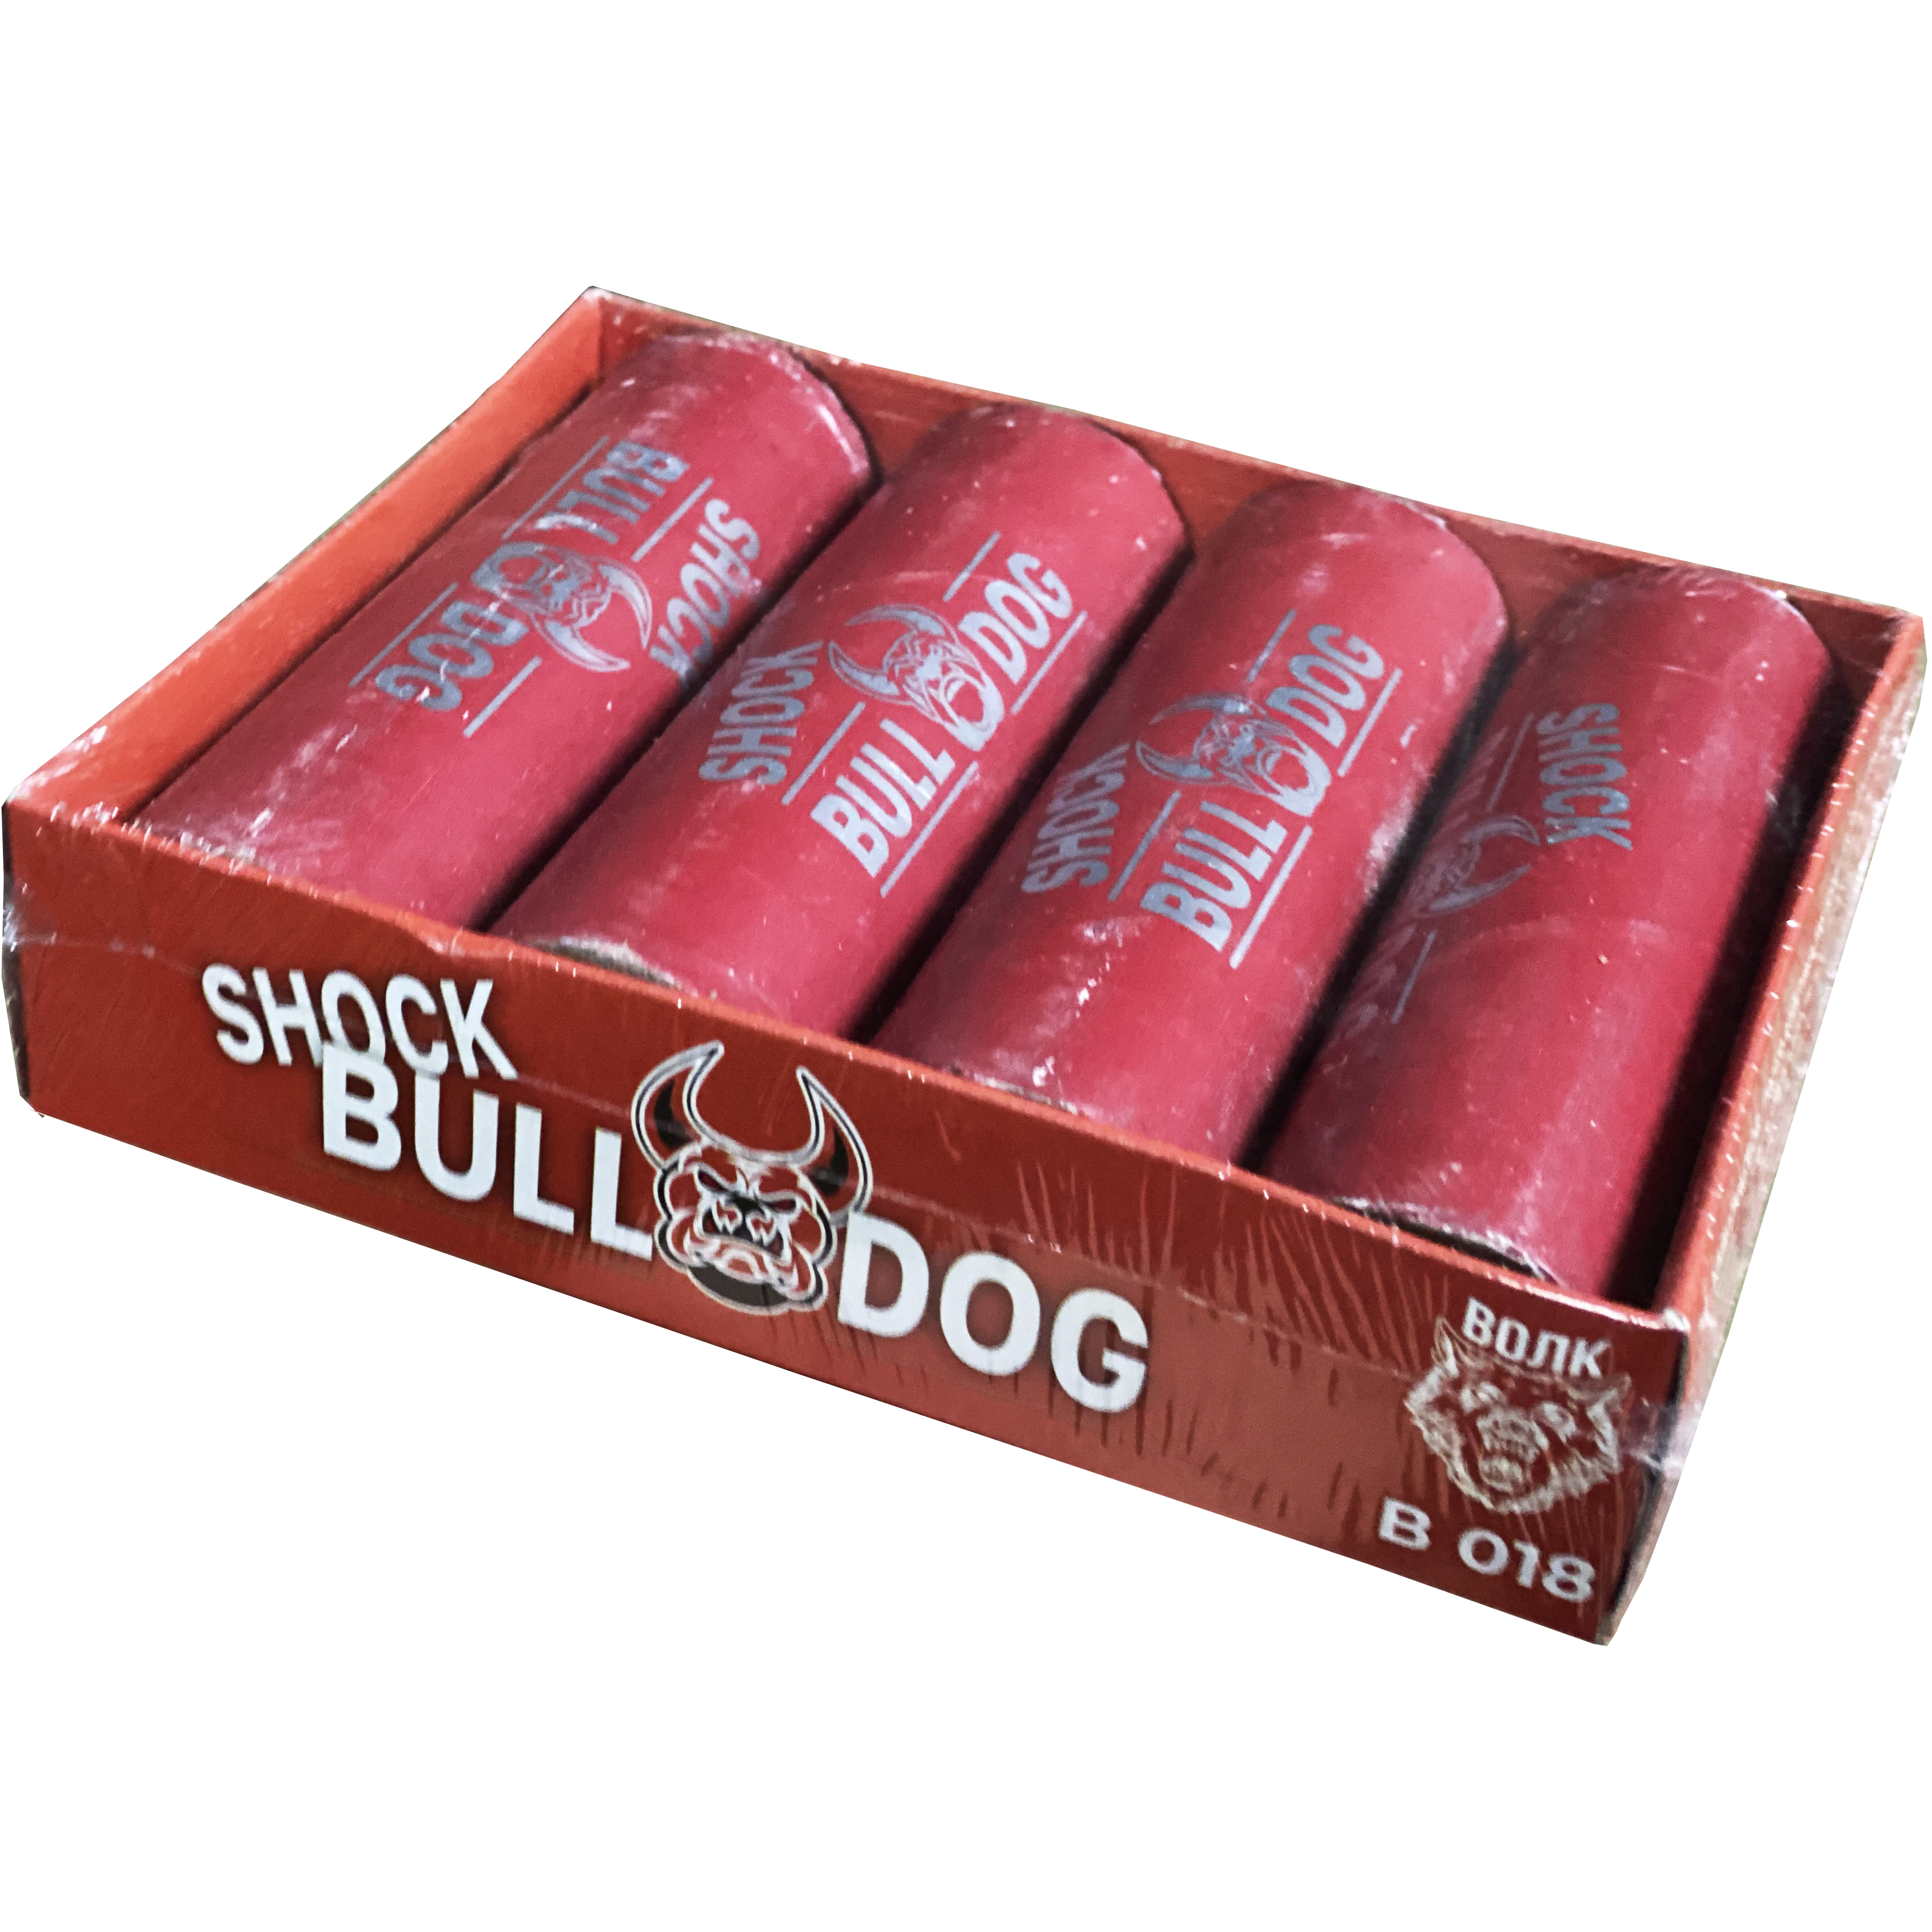  Shock Bull Dog  4